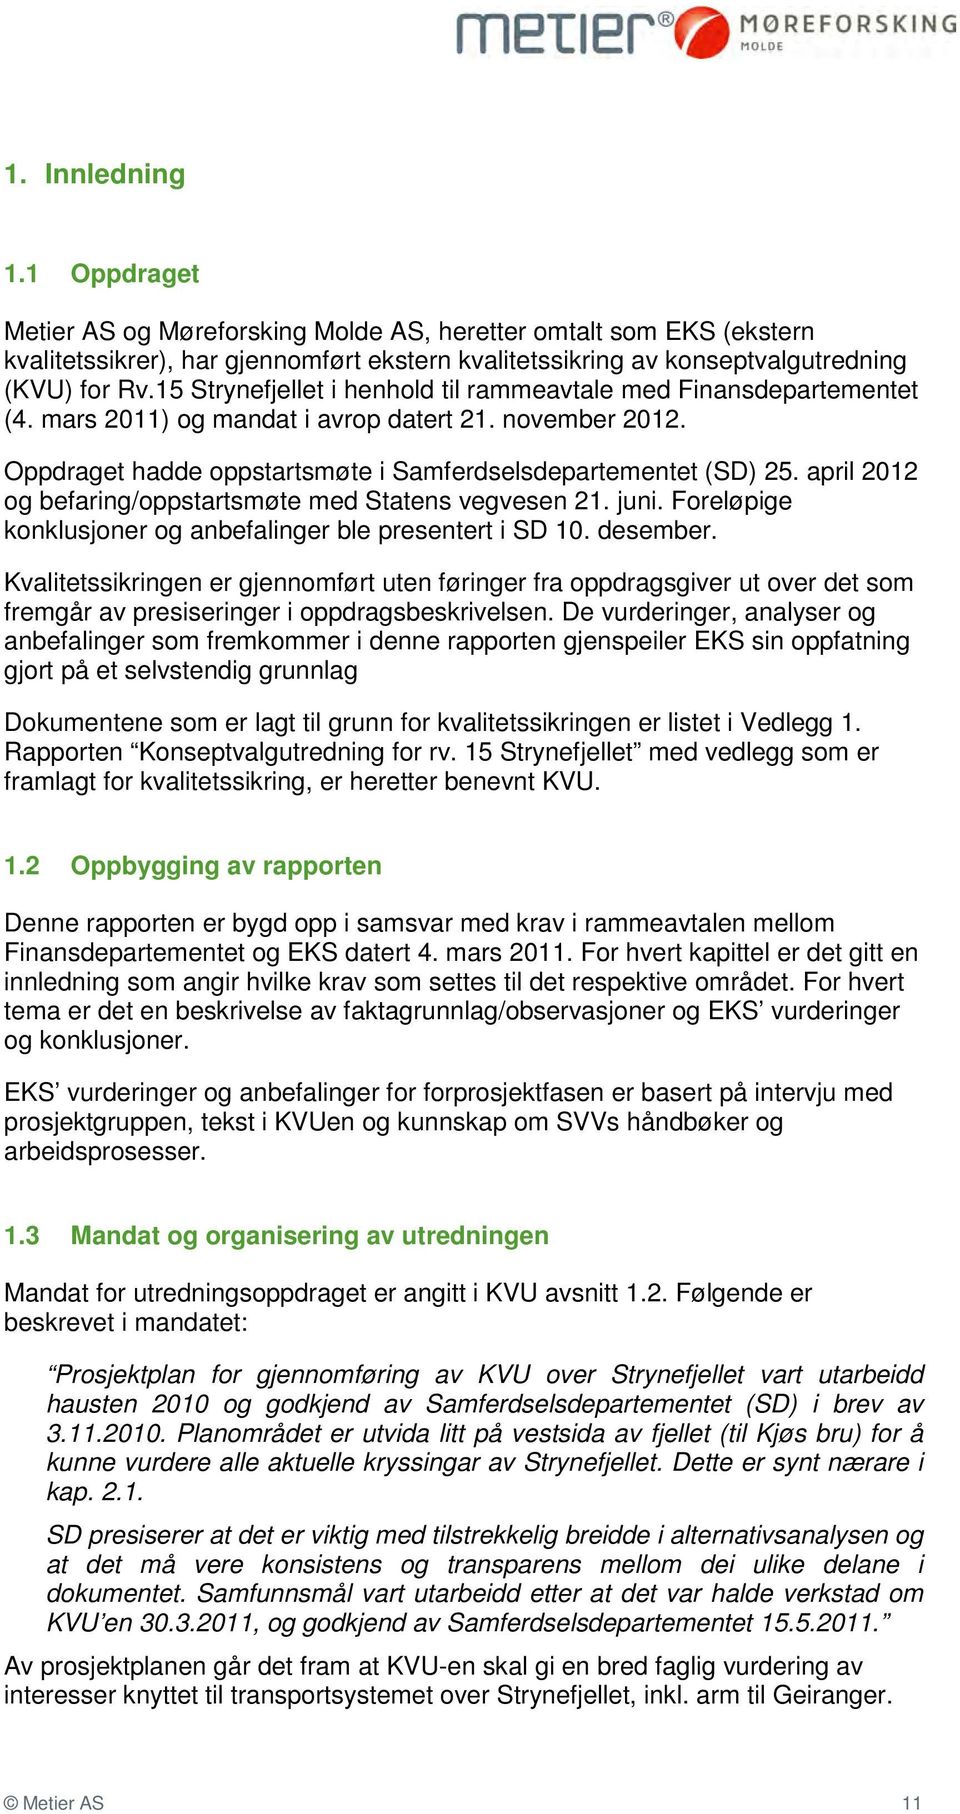 april 2012 og befaring/oppstartsmøte med Statens vegvesen 21. juni. Foreløpige konklusjoner og anbefalinger ble presentert i SD 10. desember.